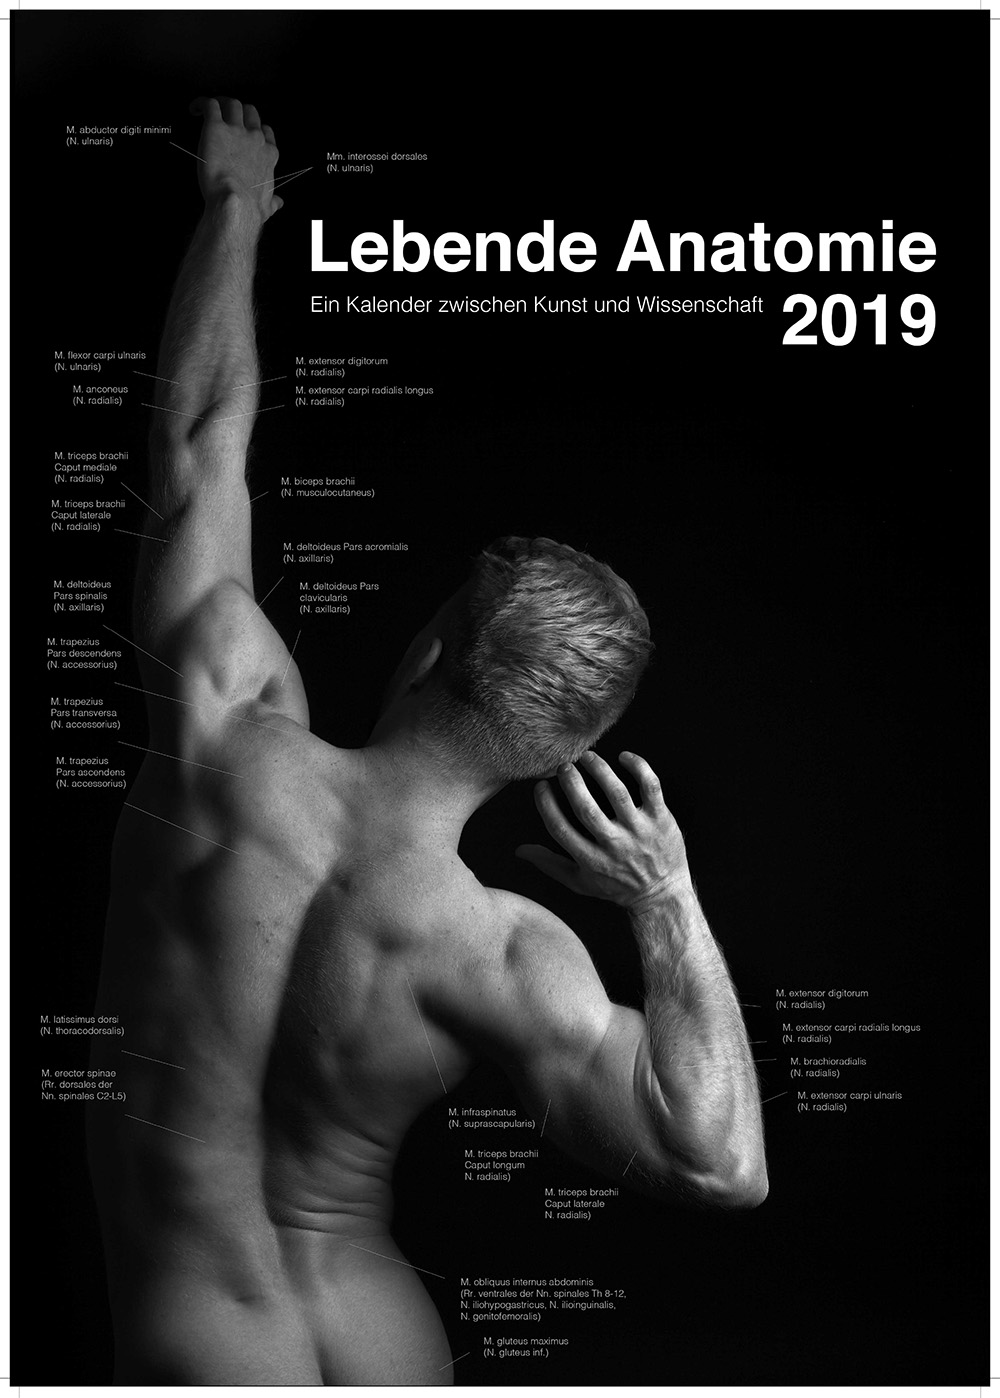 Lebende Anatomie 2019 Kalender Vorschau